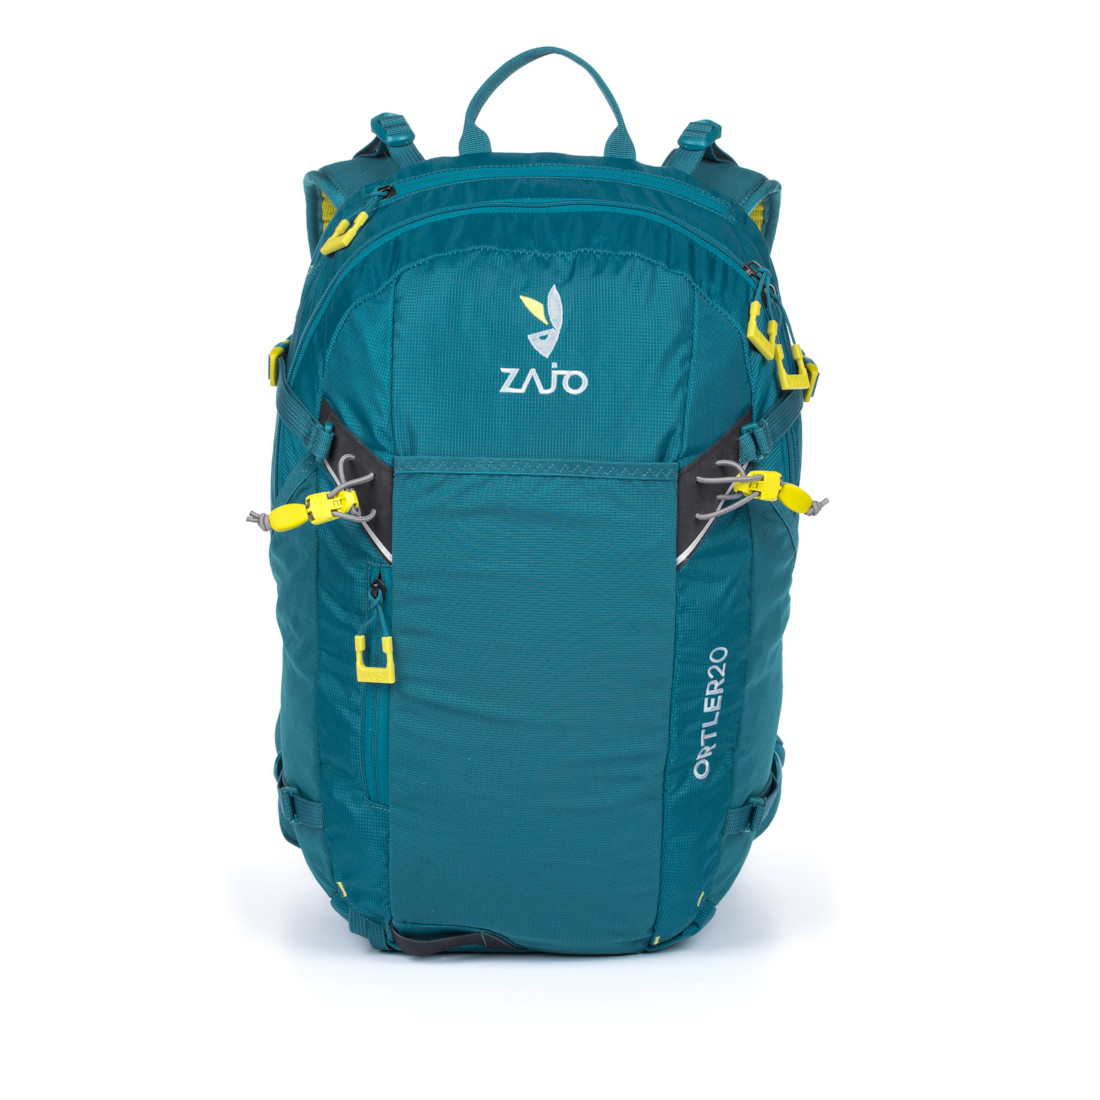 Ortler 20 Backpack